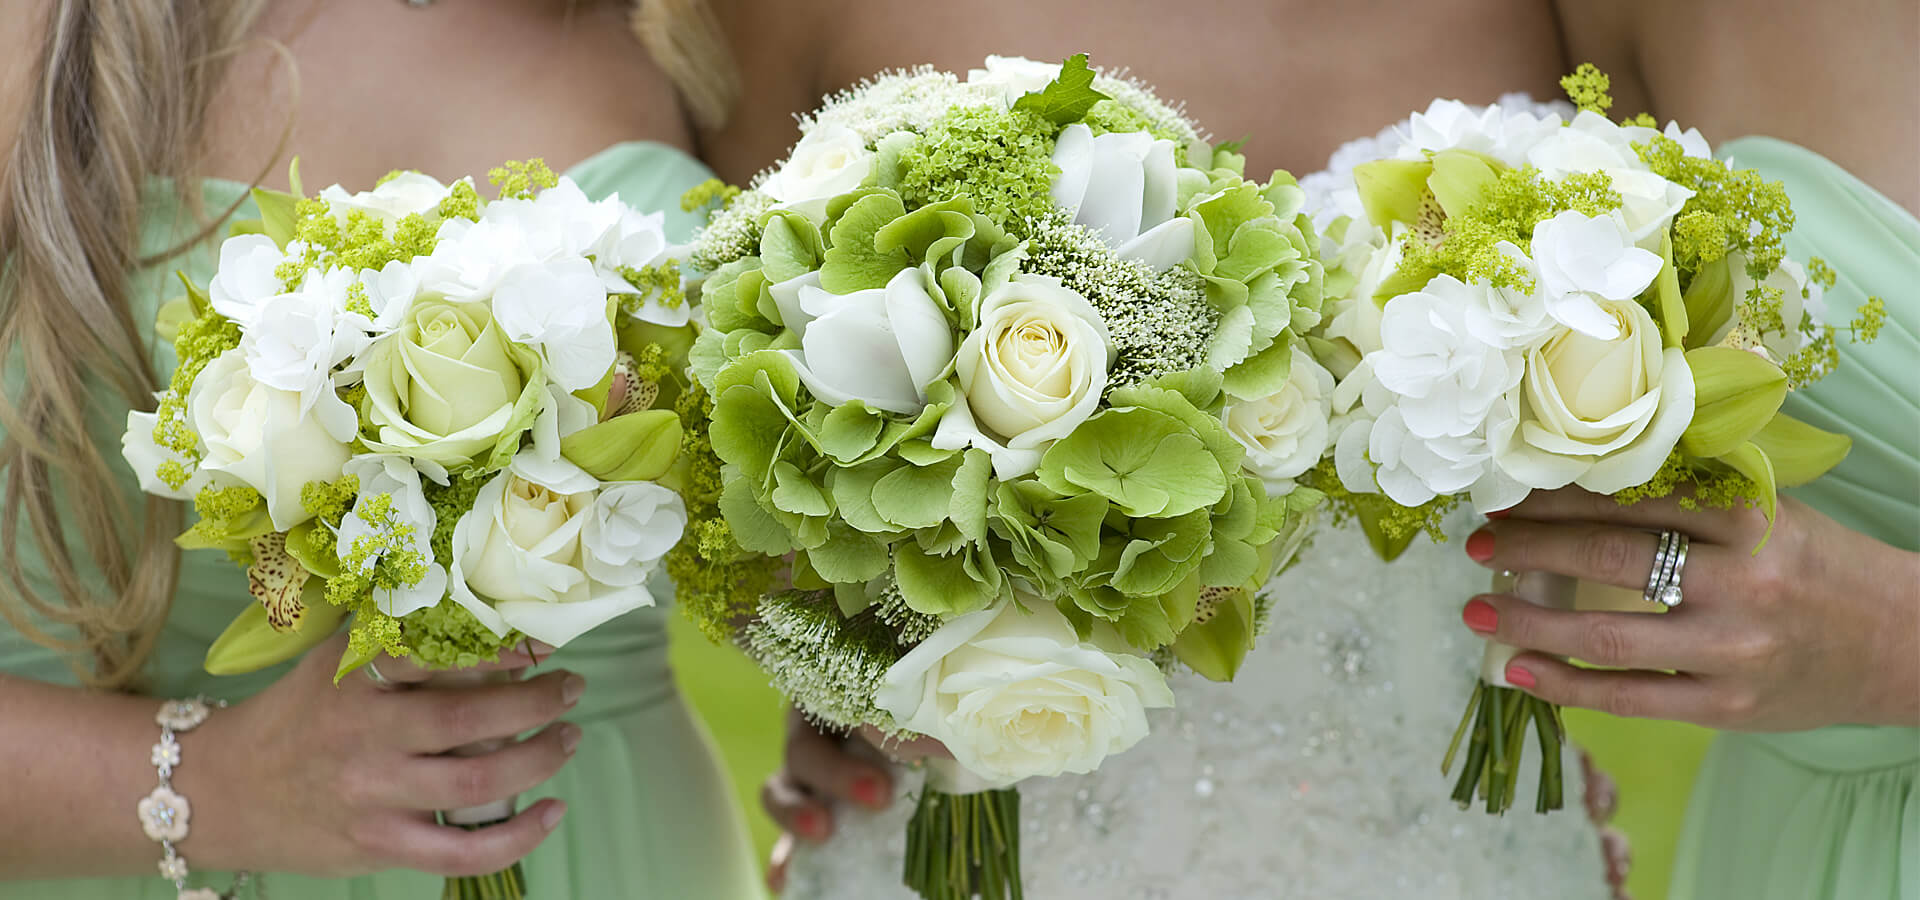 Свадьба в зеленом цвете: свежесть и оригинальность